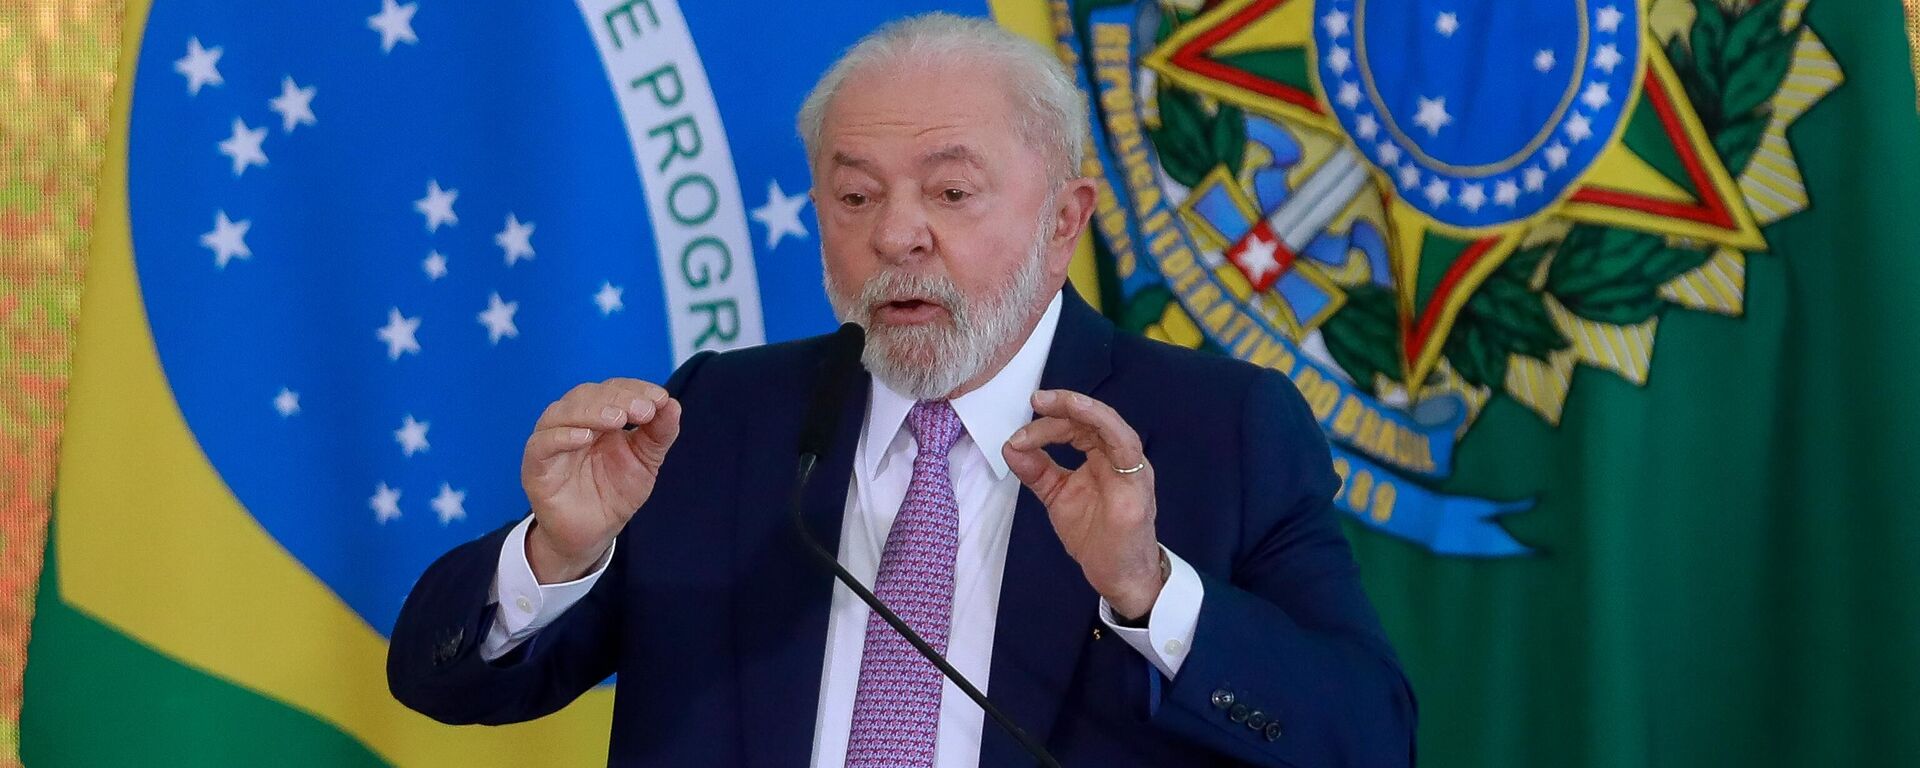 O presidente brasileiro Luiz Inácio Lula da Silva fala durante a cerimônia de lançamento do 'Plano Safra' (Plano Safra) 2023-2024, uma estrutura de política agrícola implementada pelo governo brasileiro, em Brasília, em 27 de junho de 2023 - Sputnik Brasil, 1920, 27.06.2023